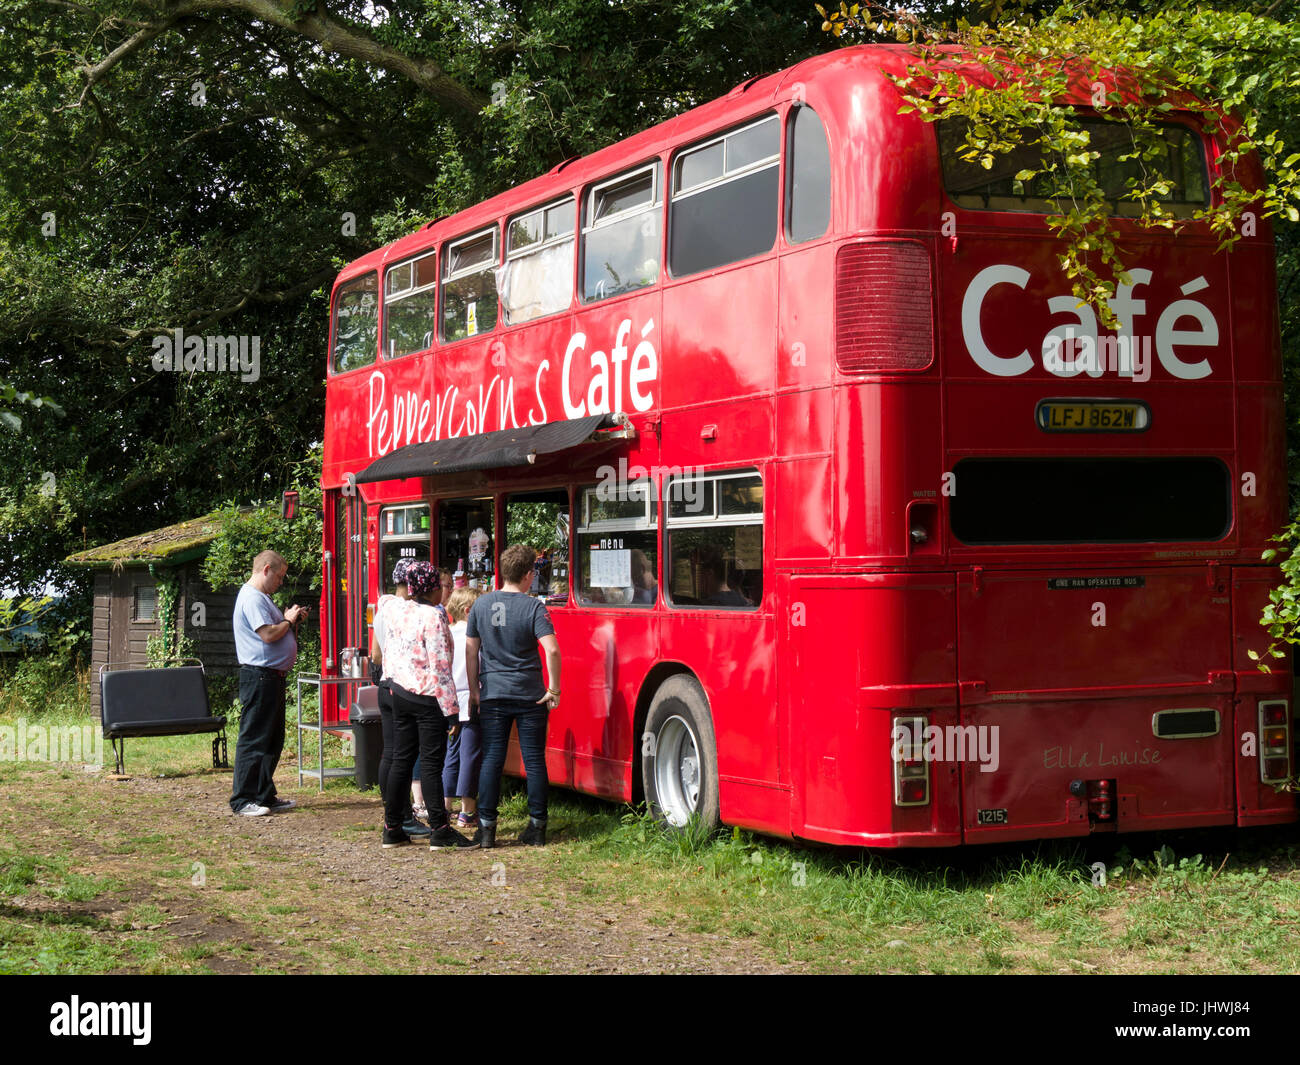 Vieux, grand, rouge London double-decker bus Routemaster converti en café mobile. Banque D'Images